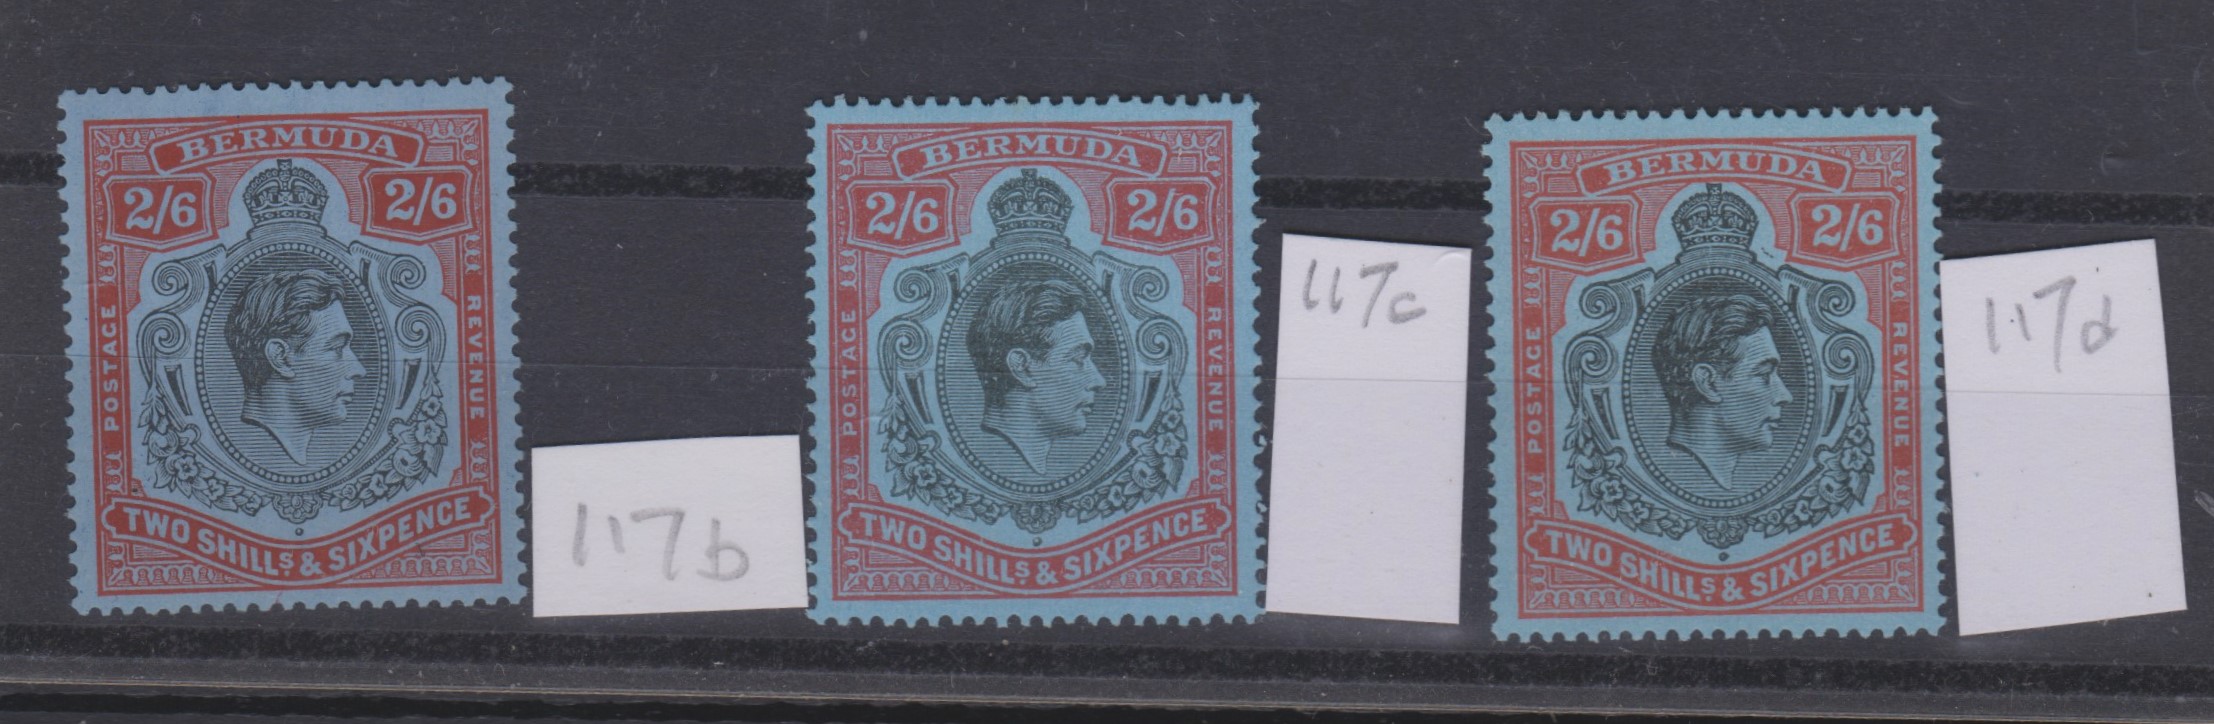 Bermuda 1938 - 1953 - 2/6, three l/m/mint, 117b, 117c, 117d (3)